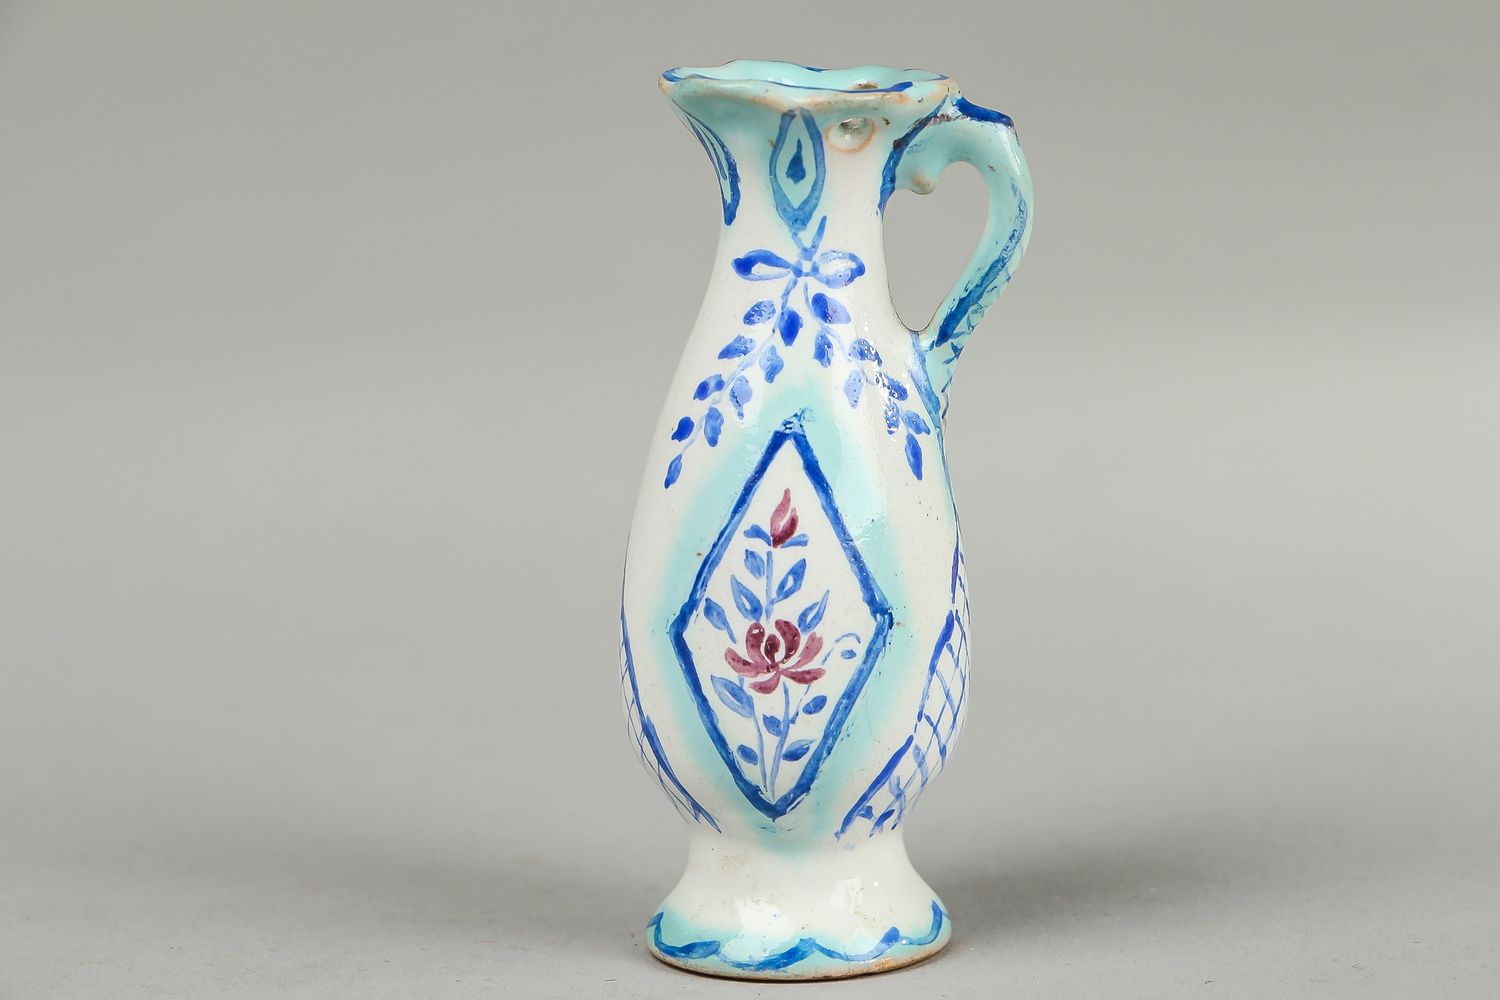 Super tiny 3 inches ceramic handmade vase in floral design 0,09 lb photo 1